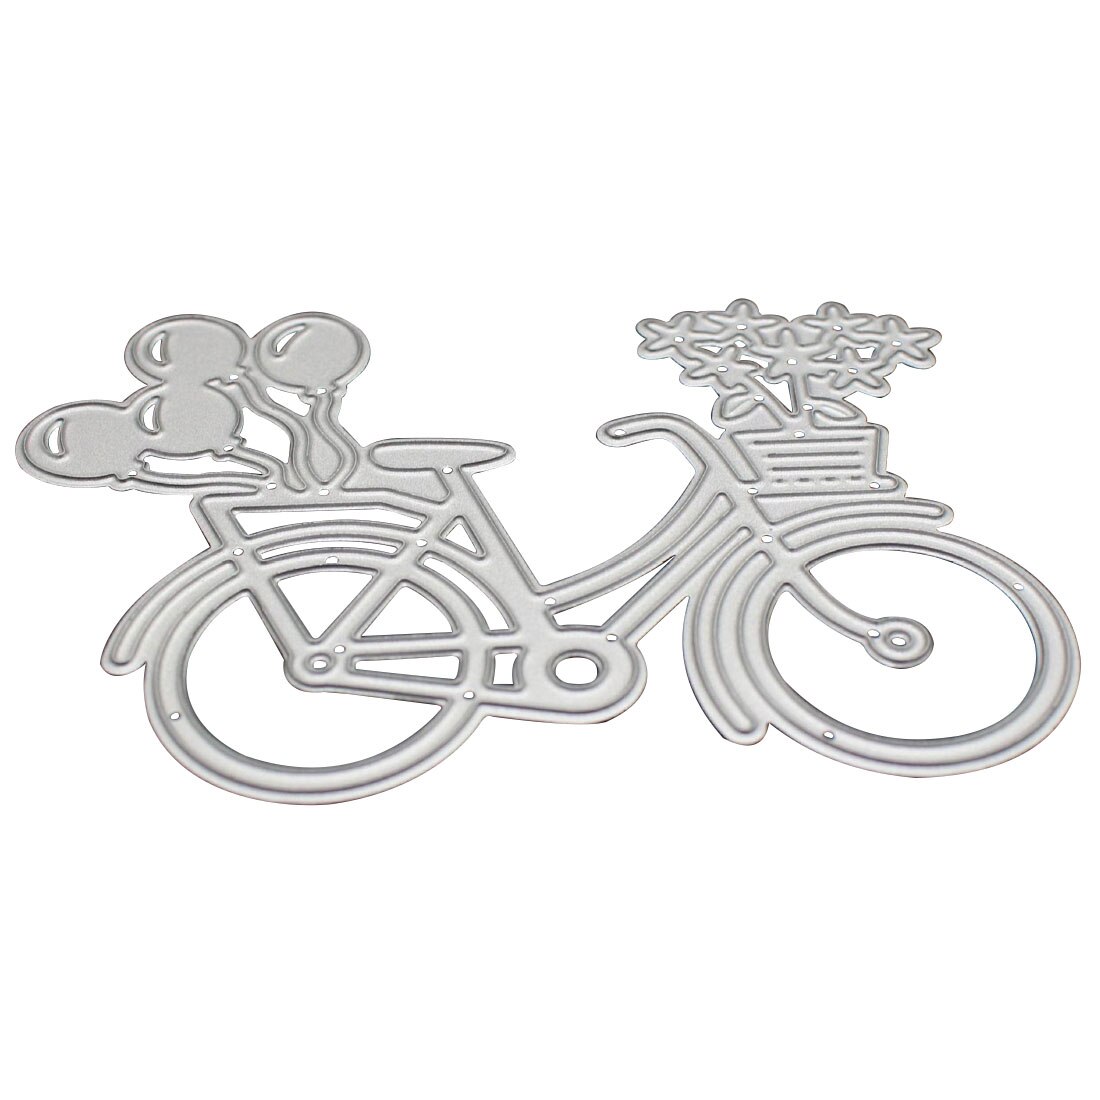 Dejlig cykel cykel diy metal skære dør stencil stencils til skrot booking papir prægemaskine metal skæreprodukter